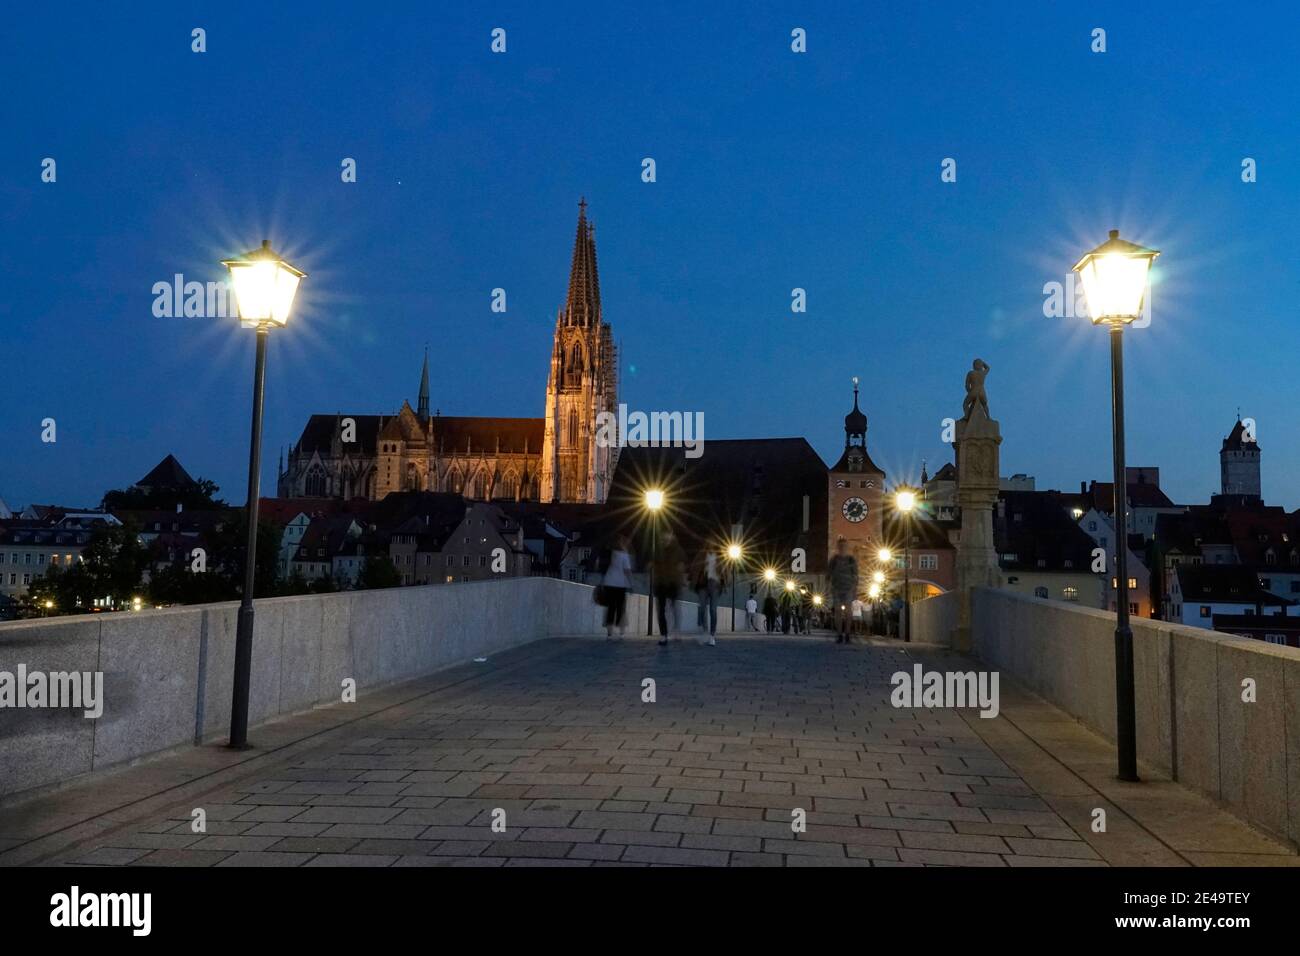 Deutschland, Bayern, Oberpfalz, Regensburg,  Steinerne Brücke, Brückentor, Dom, Fußgänger, abends, Straßenlaternen Stock Photo